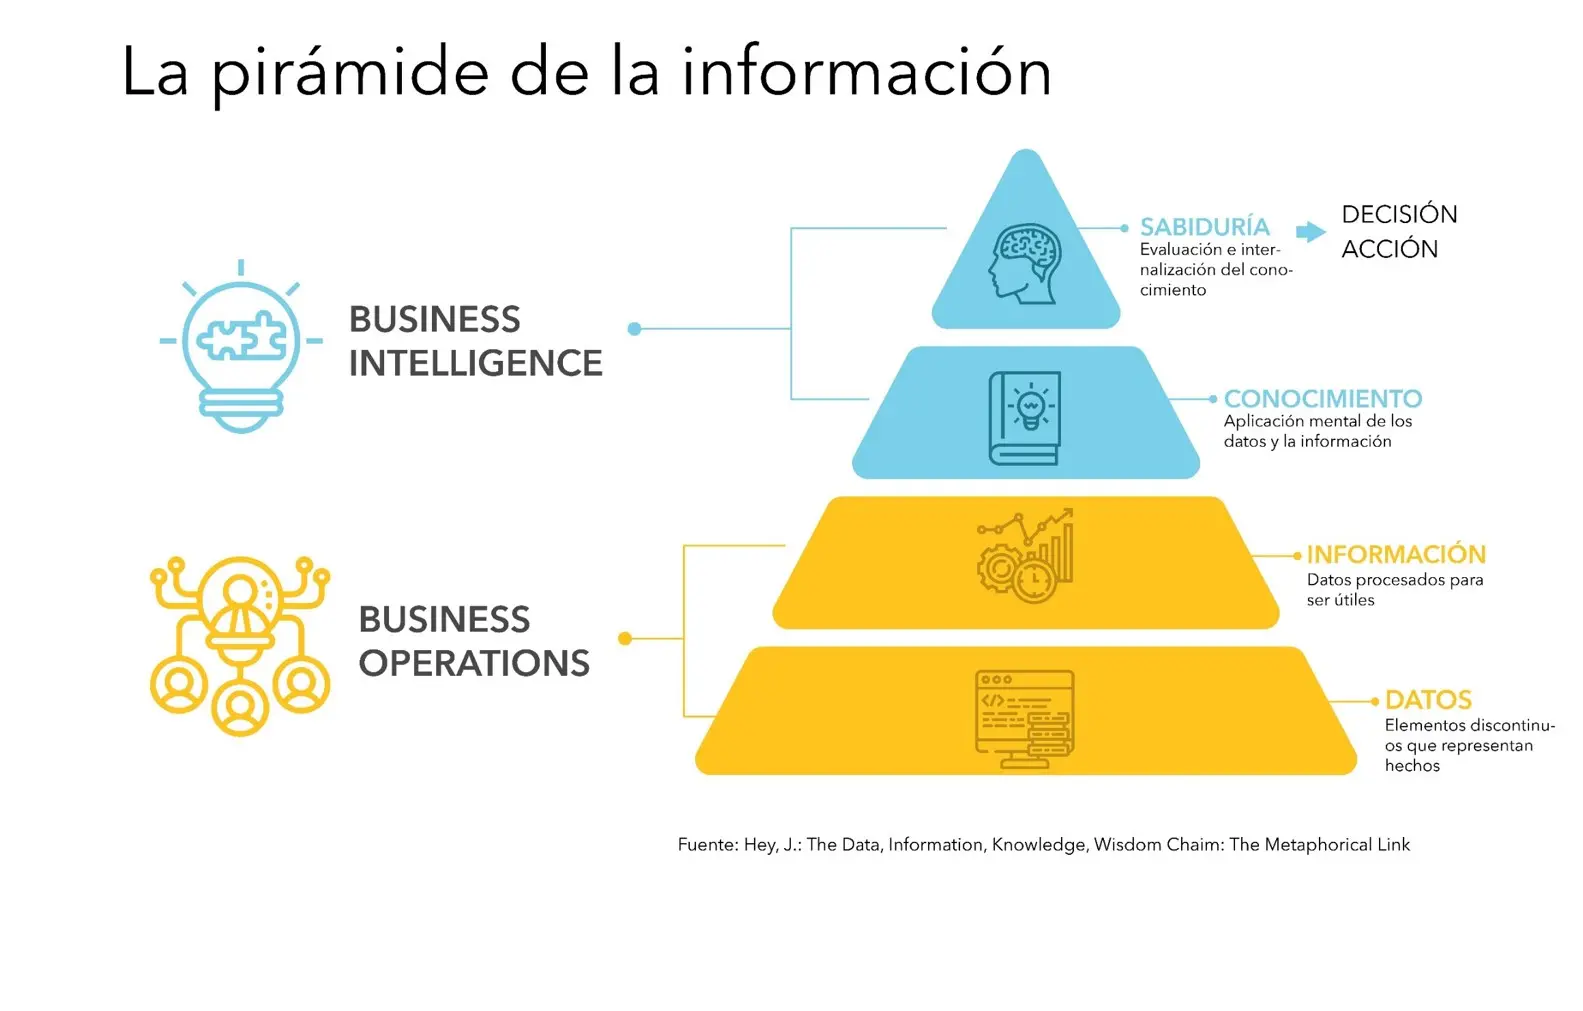 definicion de sistema de informacion de inteligencia empresarial segun autores - Qué es el sistema de información en inteligencia empresarial